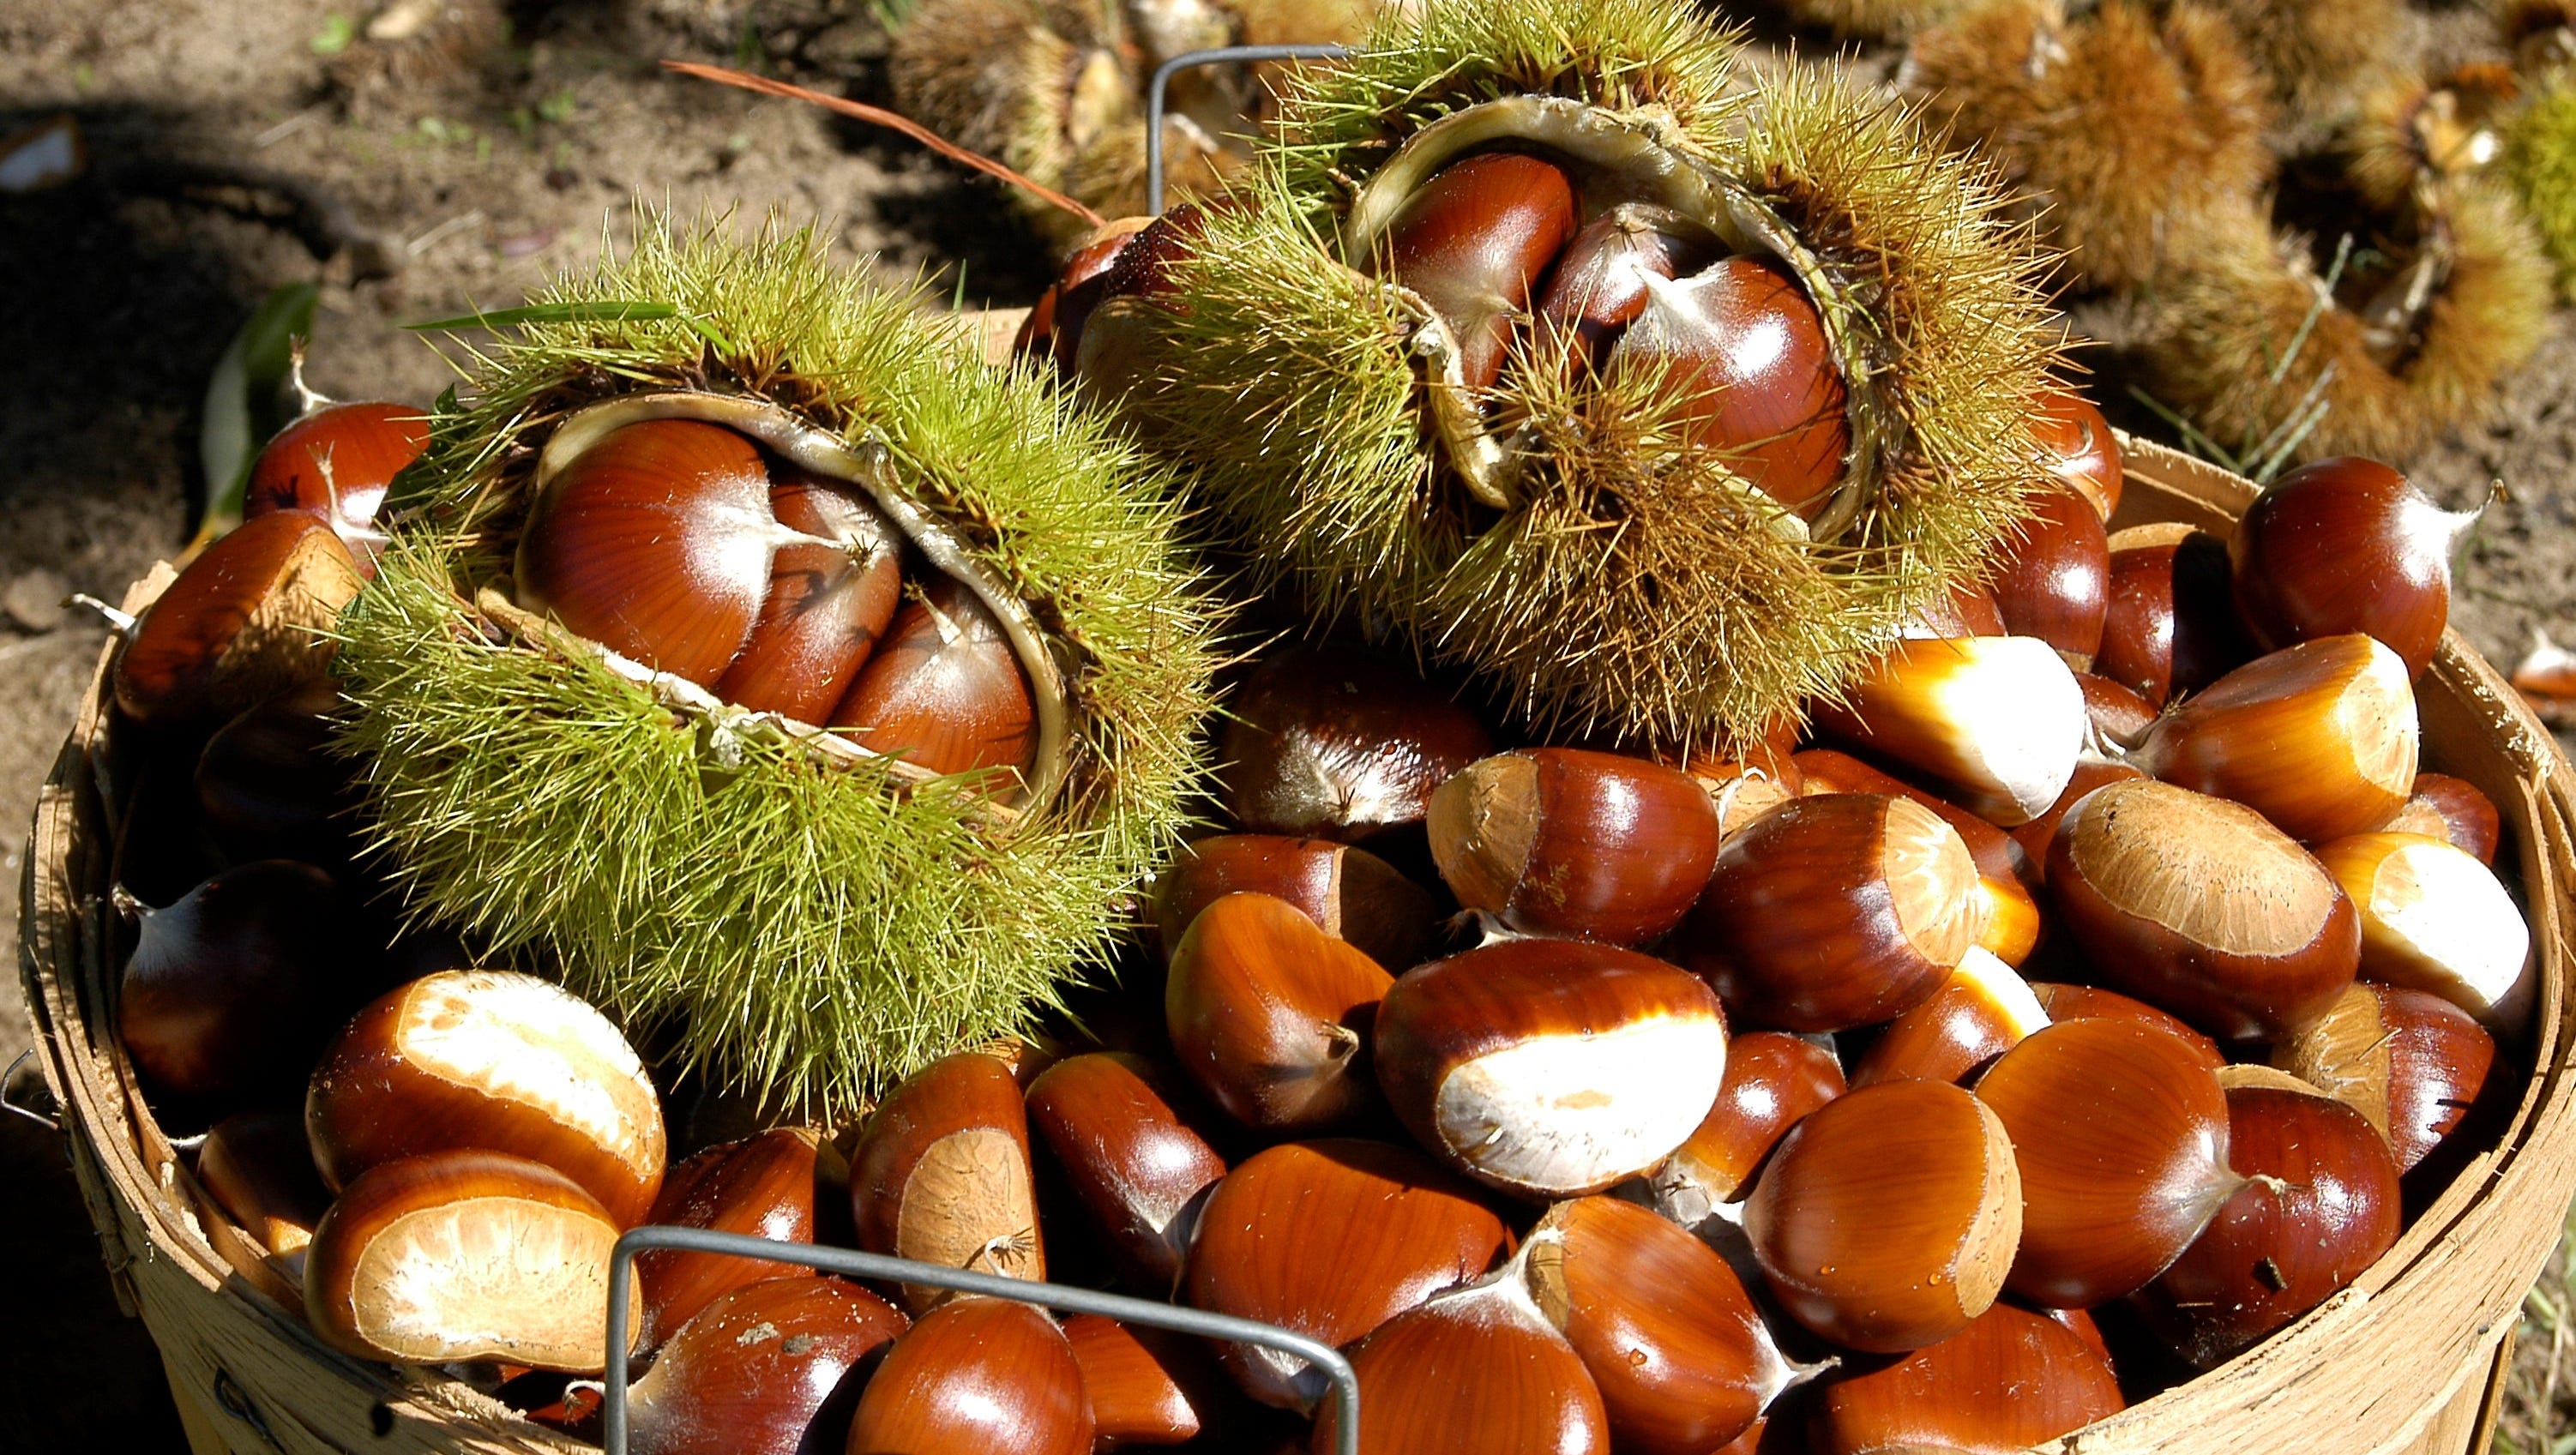 Chestnuts: A Michigan tradition makes a comeback